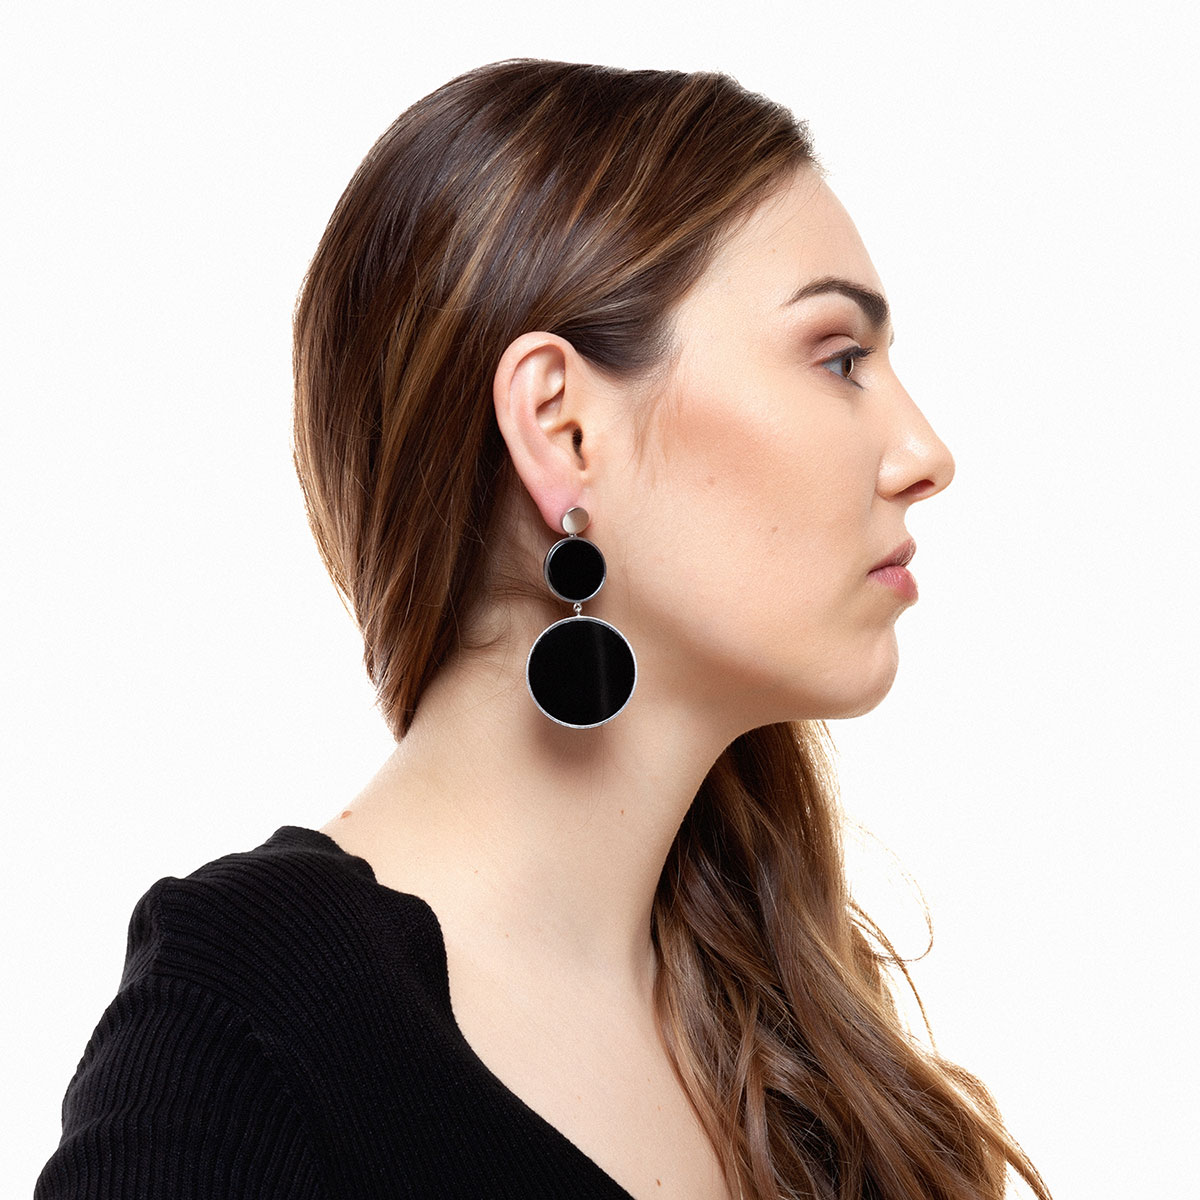 Oda handmade earrings in sterling silver and onyx designed by Belen Bajo m2